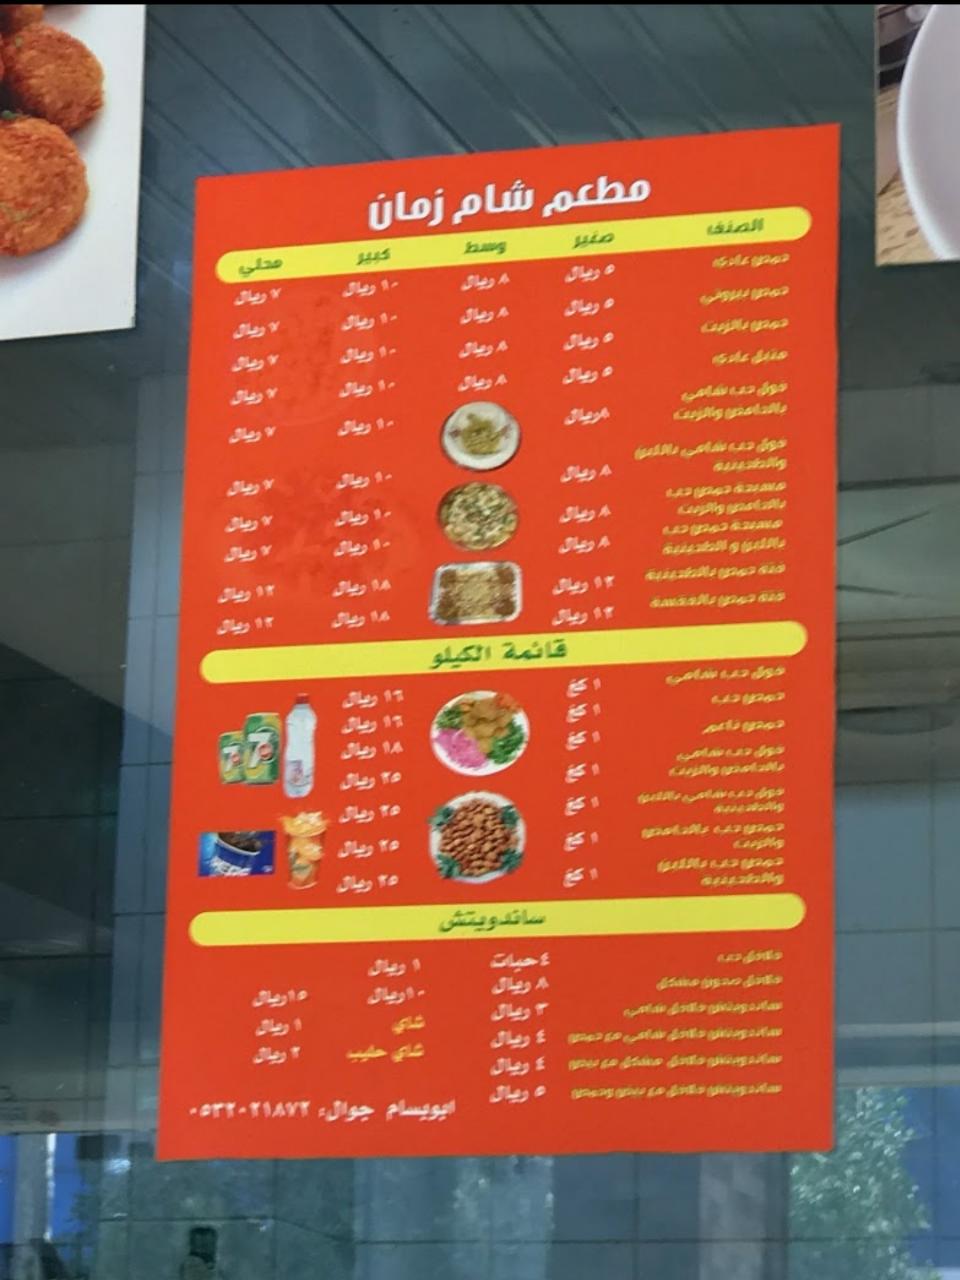 Zaman Restaurant menu